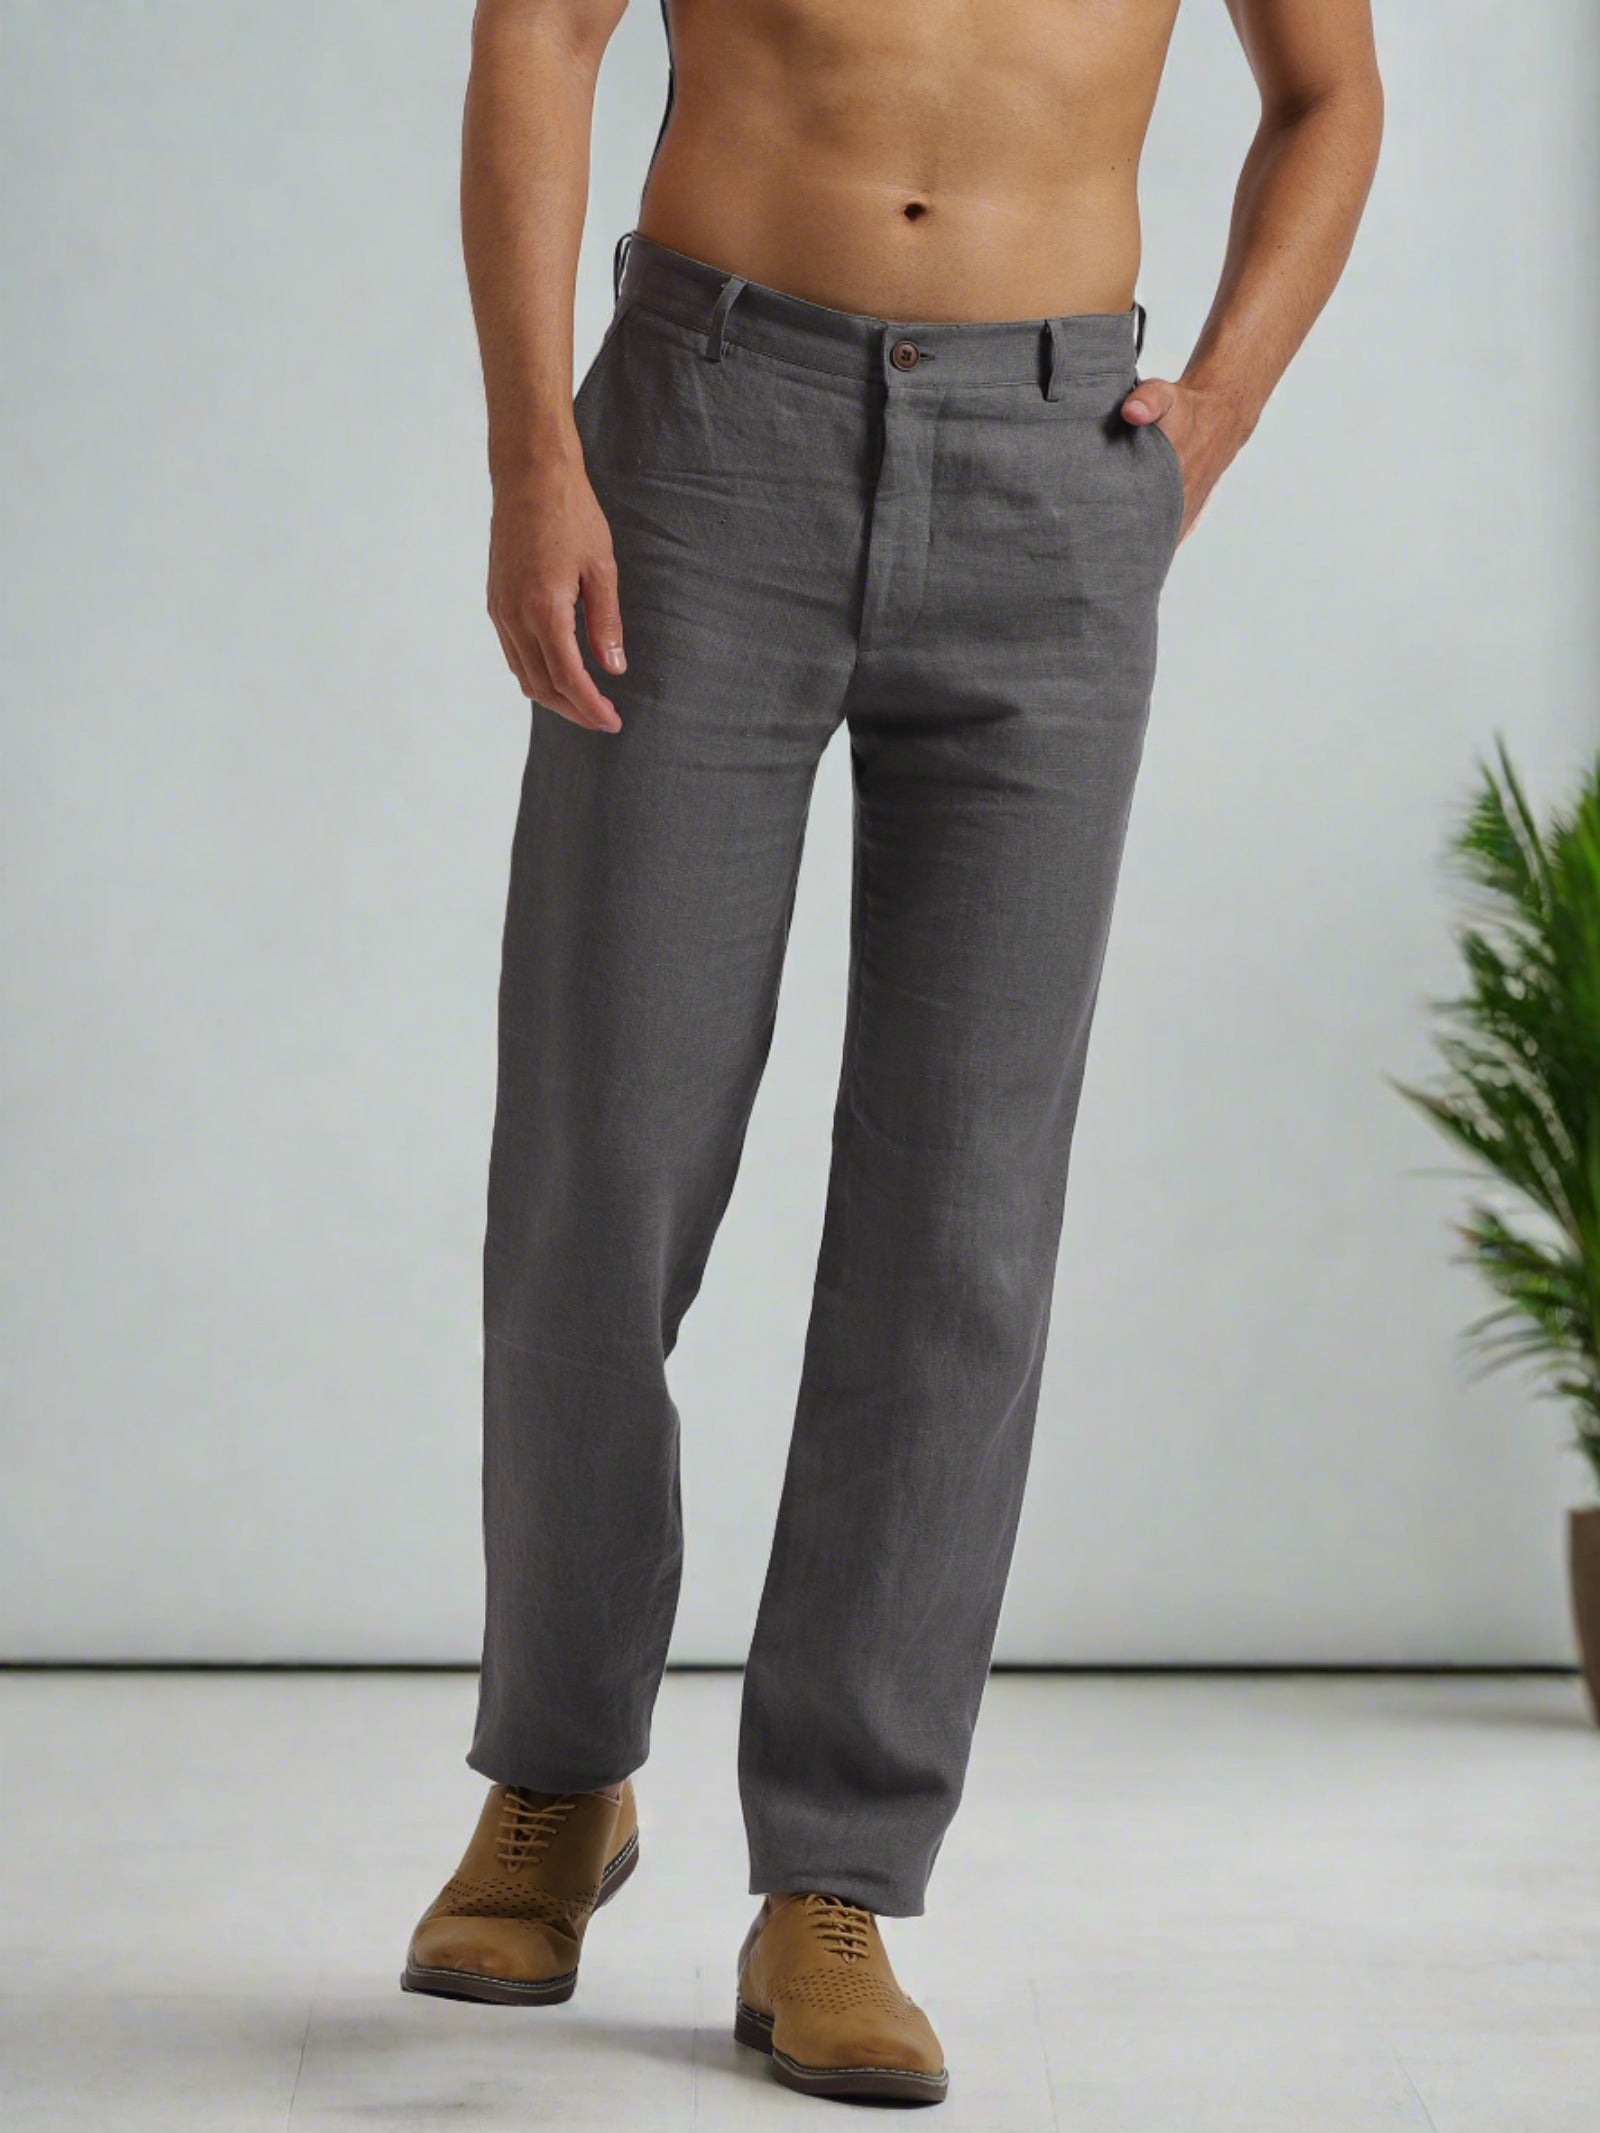 Mens Cotton Linen Pants Elastic Waist Linen Pocket Casual Trousers  Sweatpants US | eBay